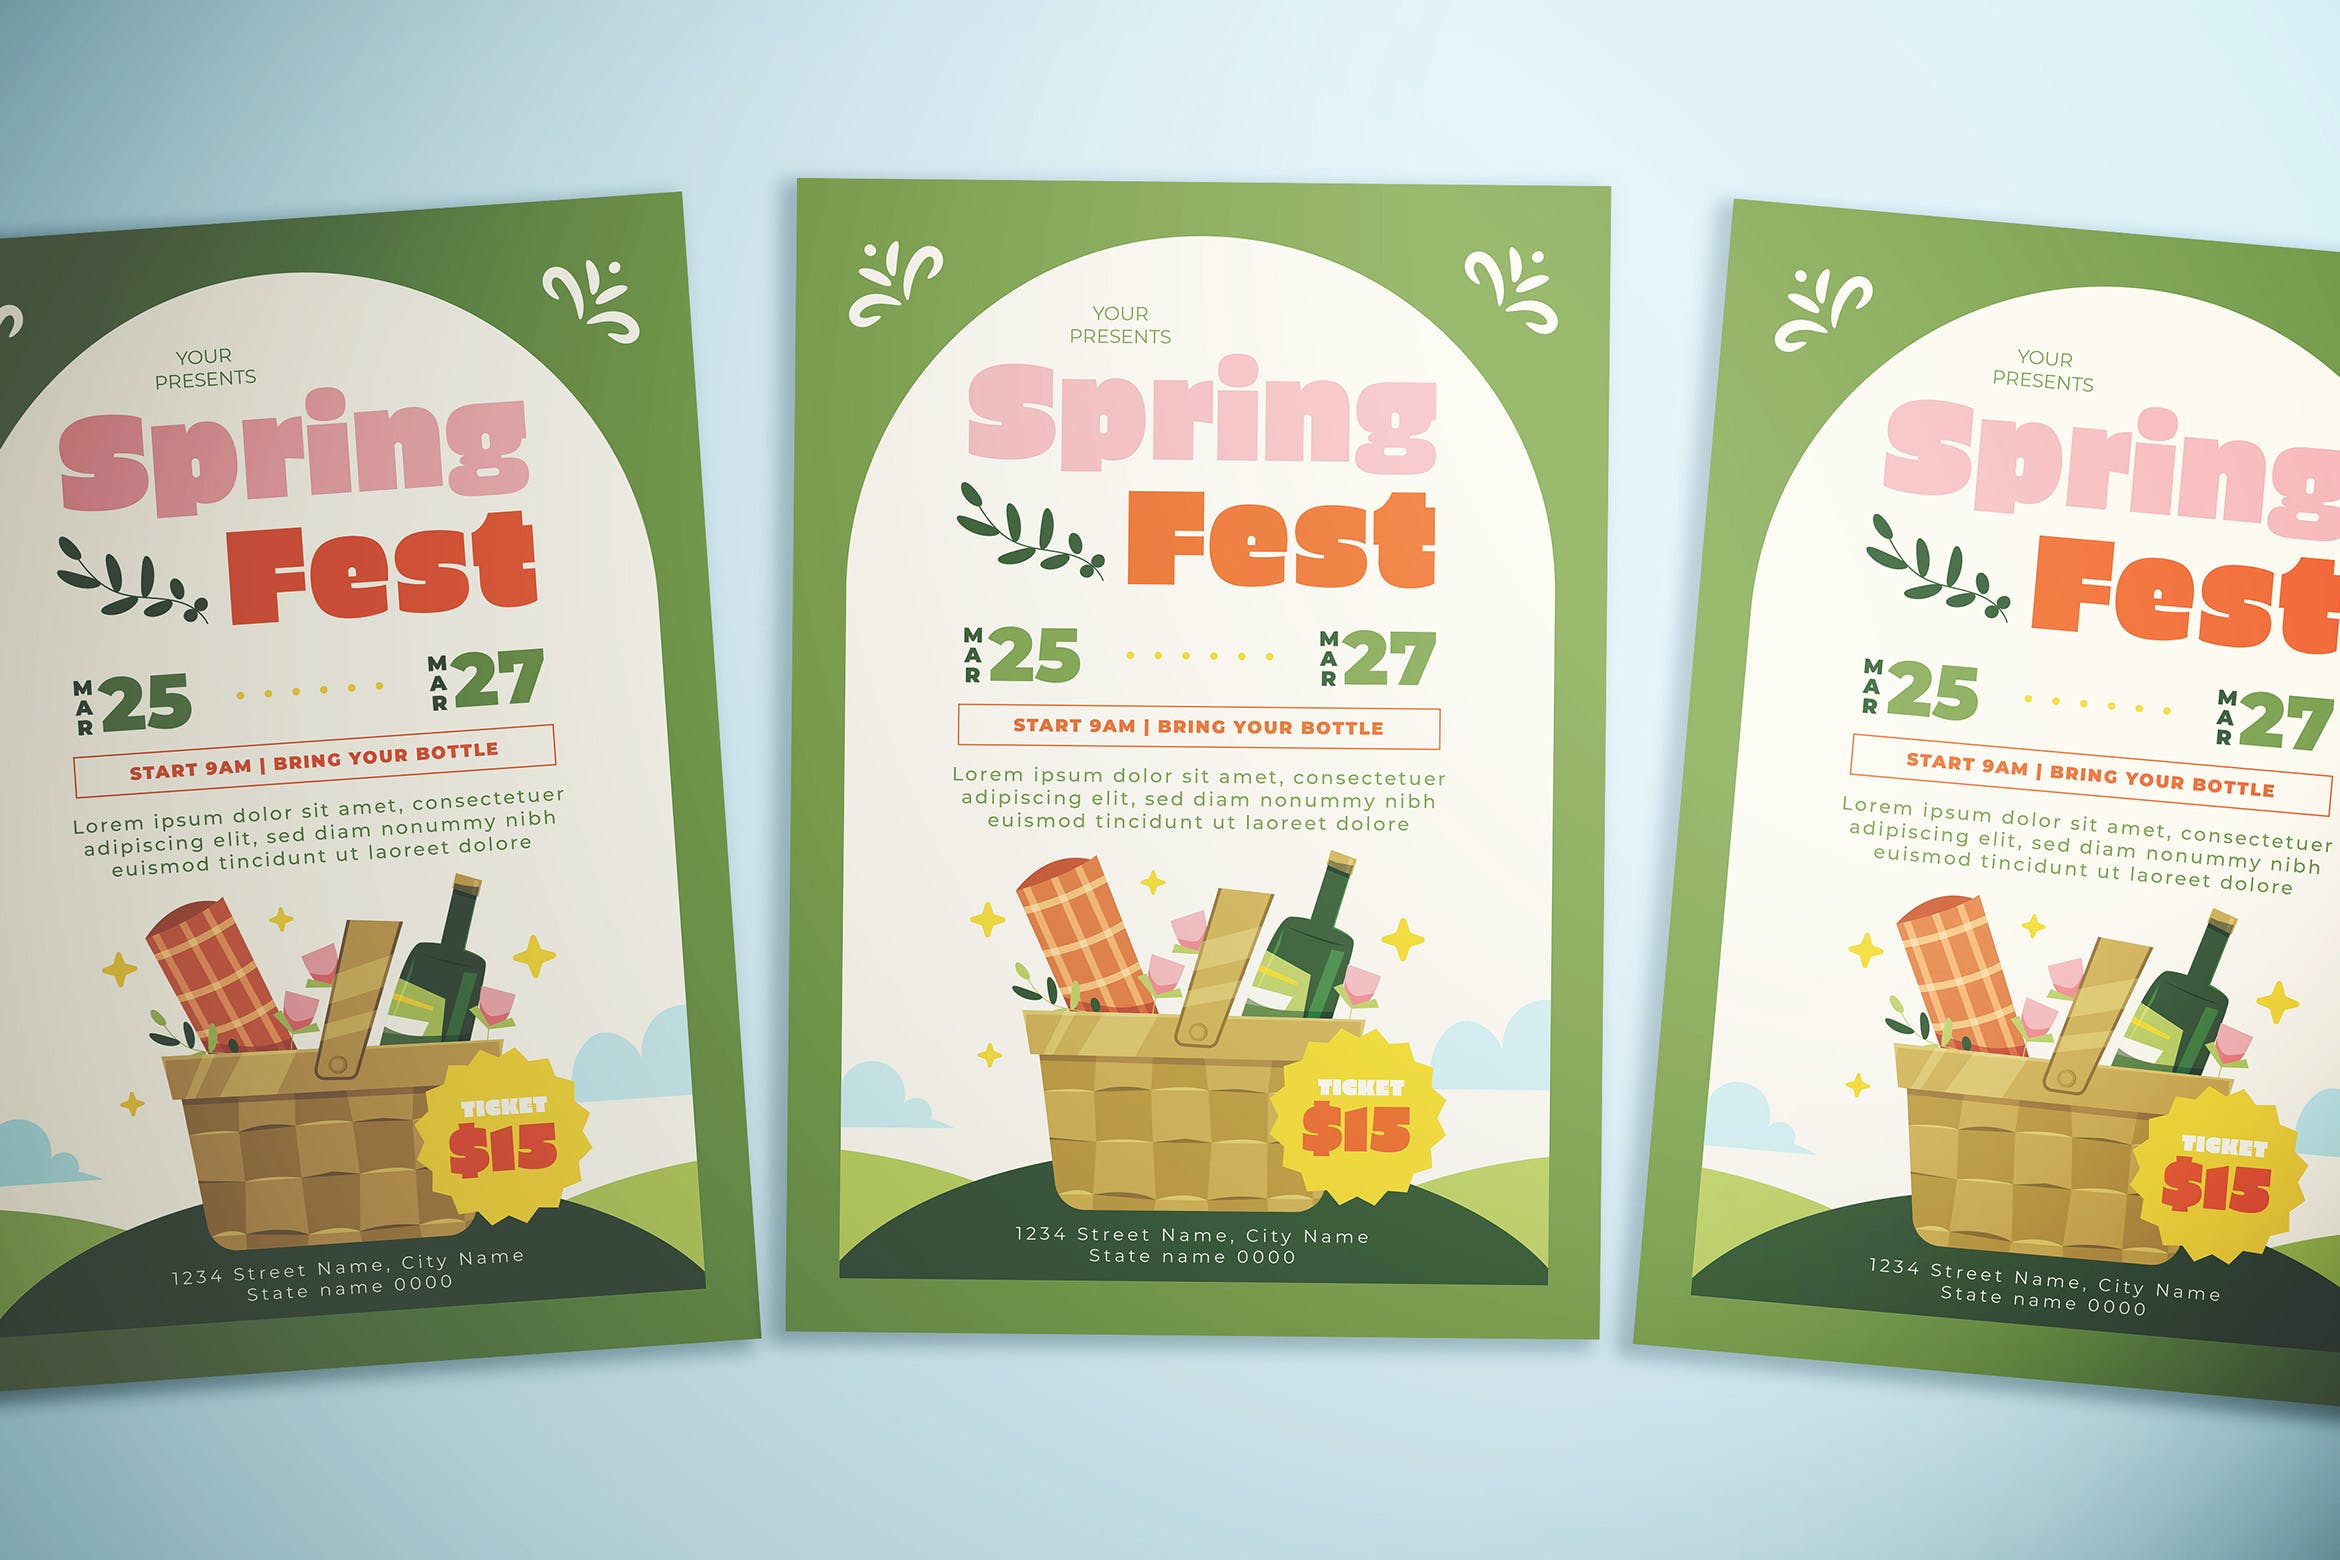 春节庆典购物宣传单素材 Spring Fest Flyer 设计素材 第1张